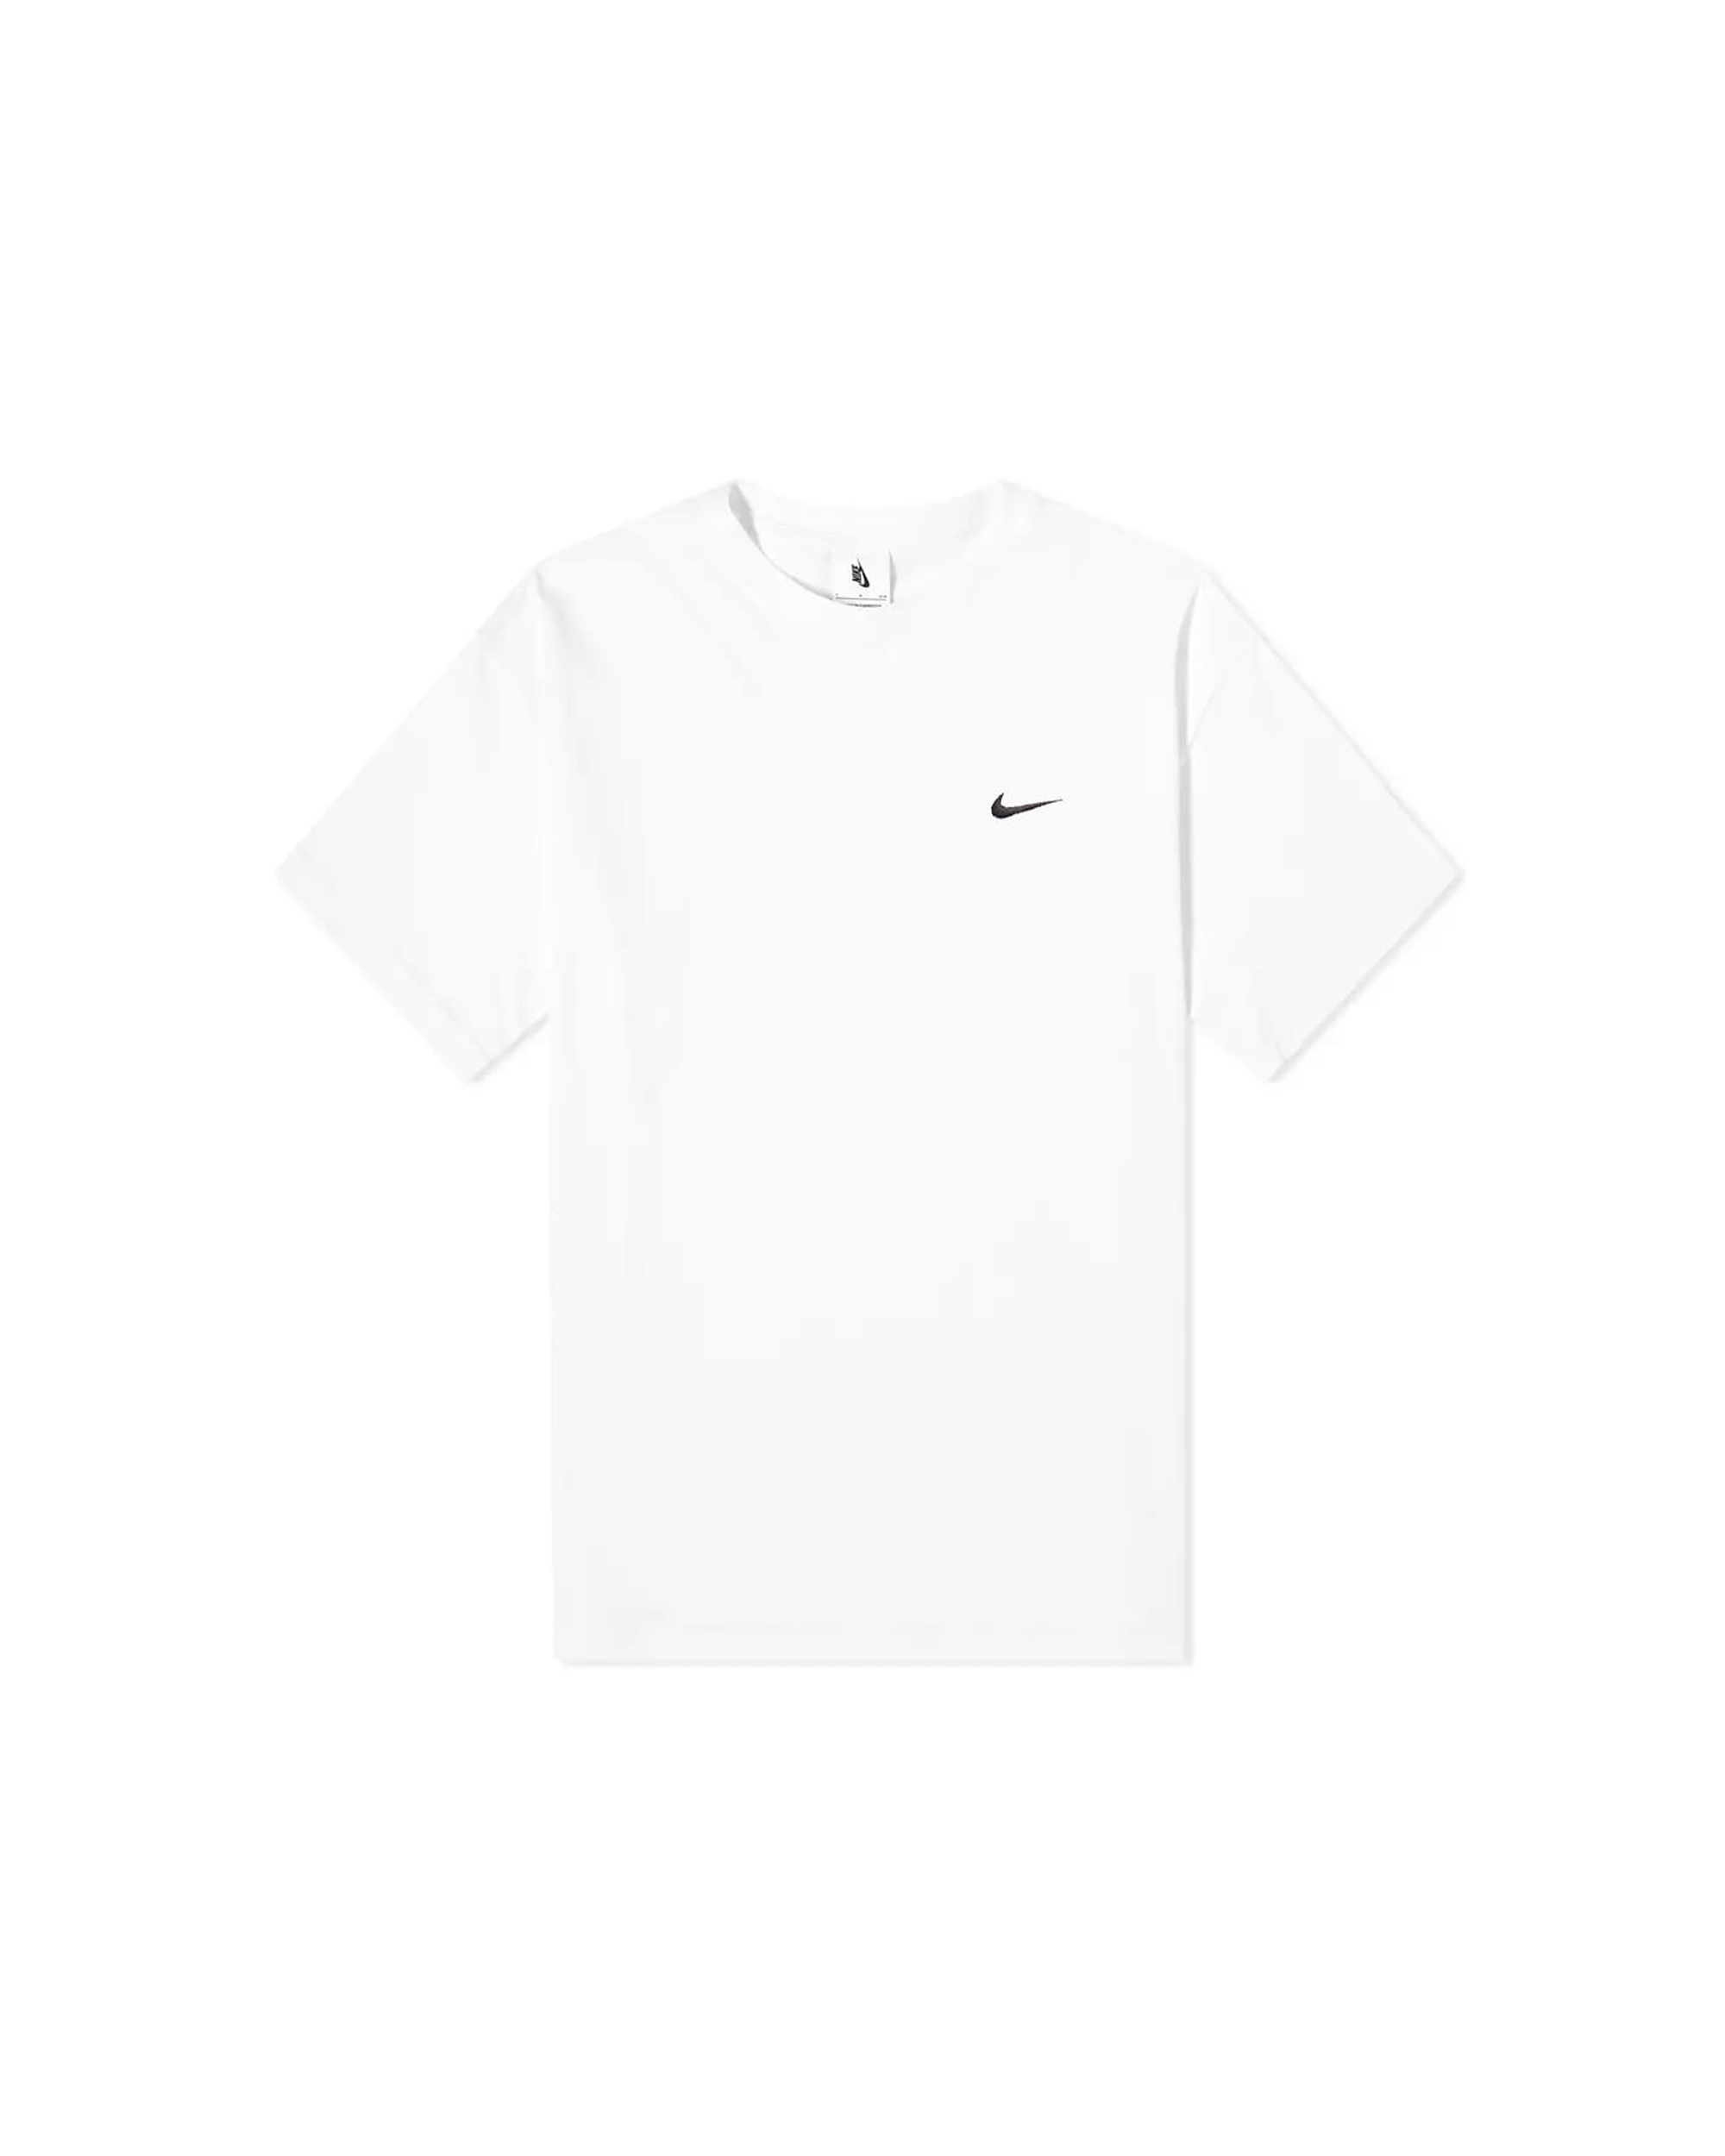 Solo Swoosh T-Shirt - White / White